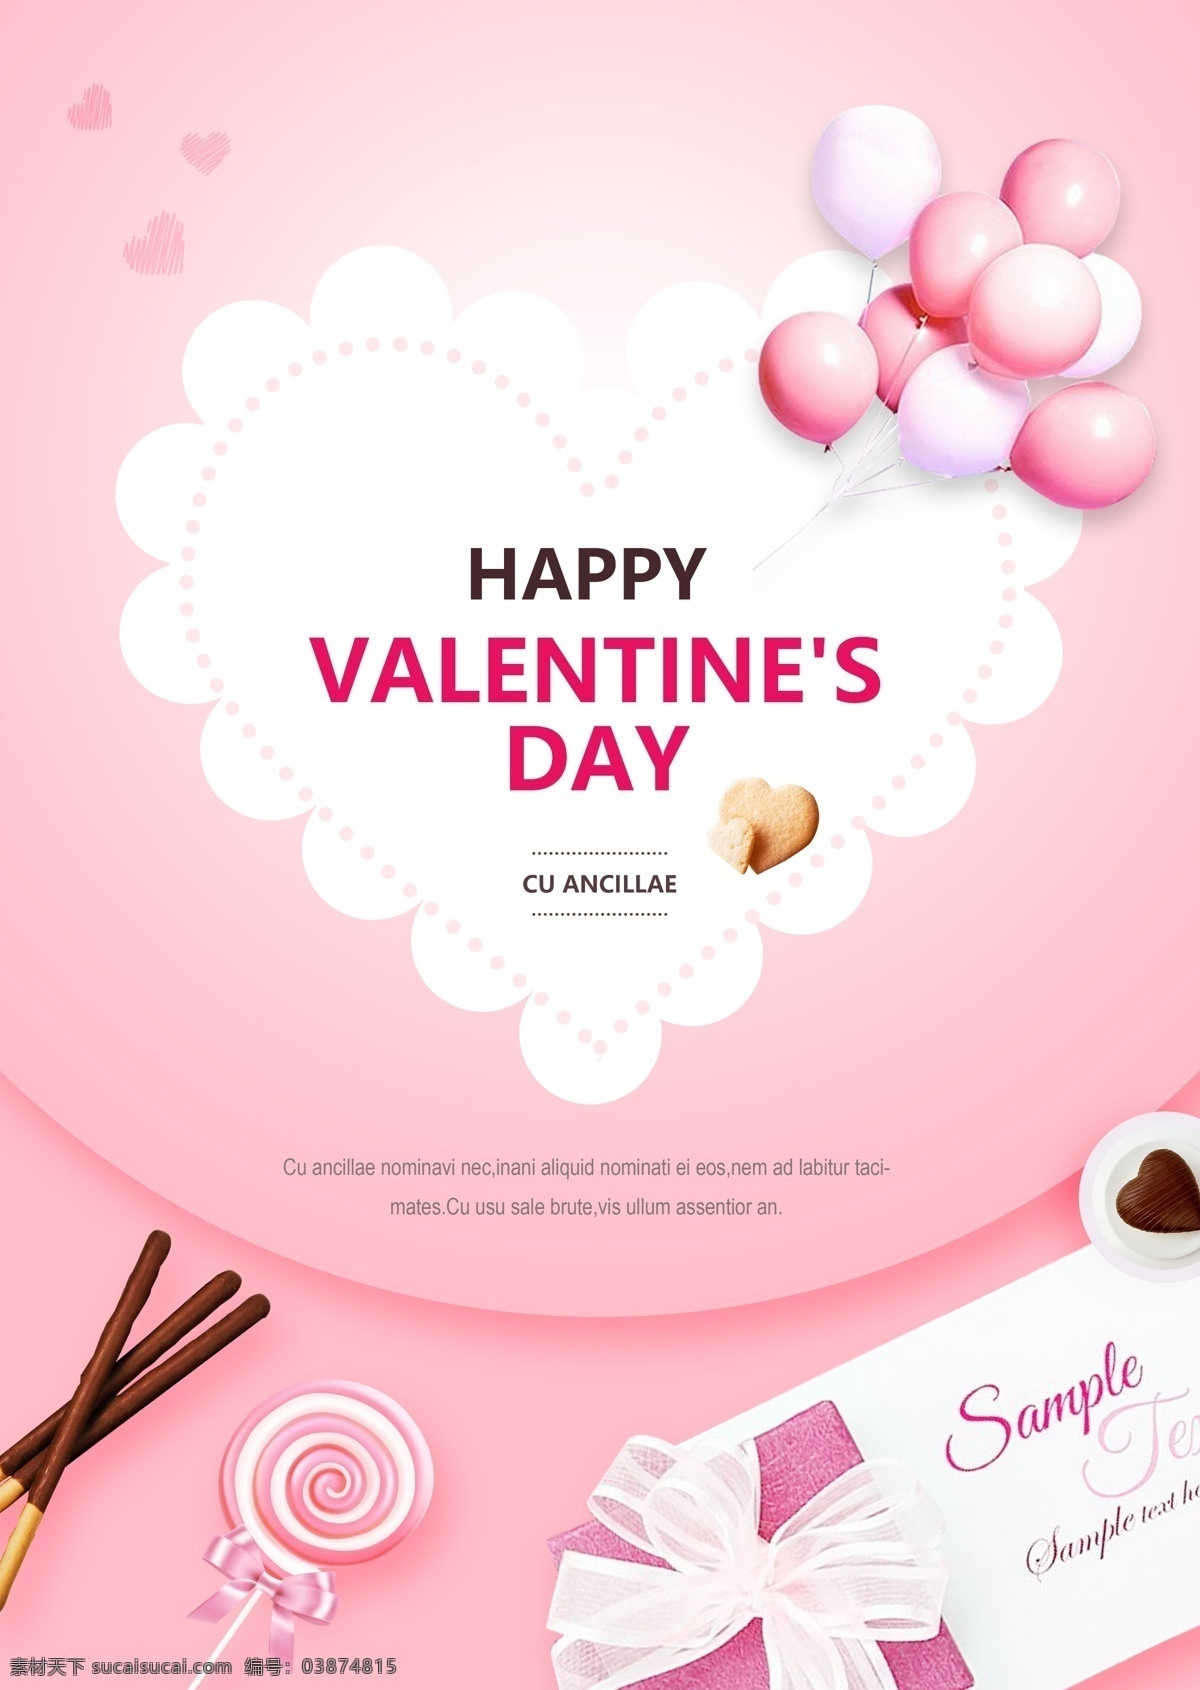 粉红色 气球 情人节 海报 饼干 蝴蝶结 大气 很简单 绸绳 爱心 心形 心形巧克力 韩国风格